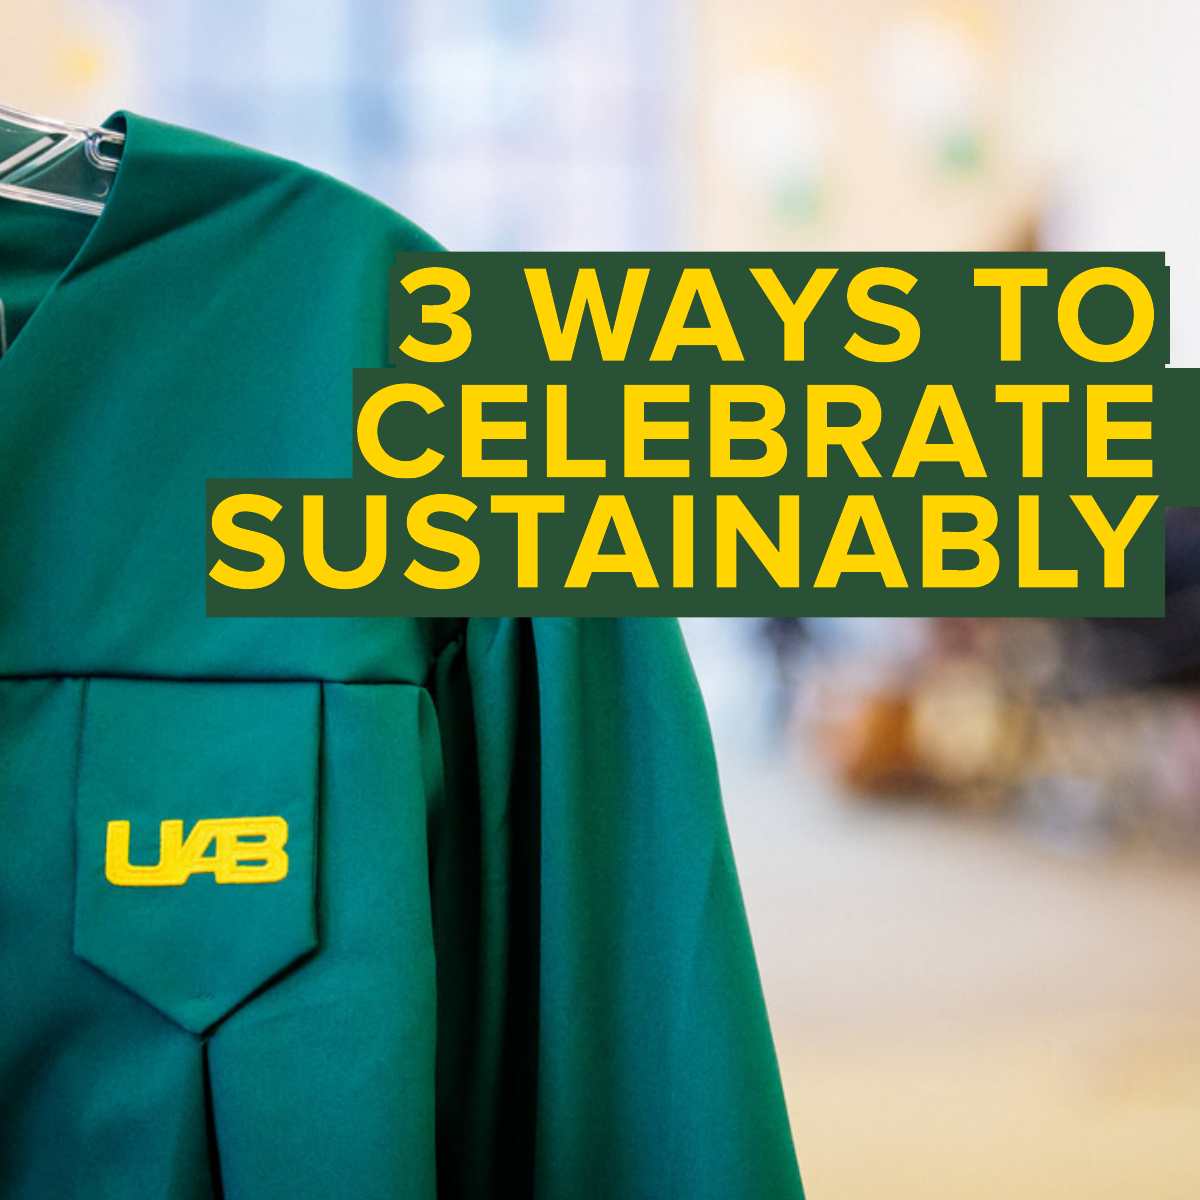 celebrate graduation sustainably